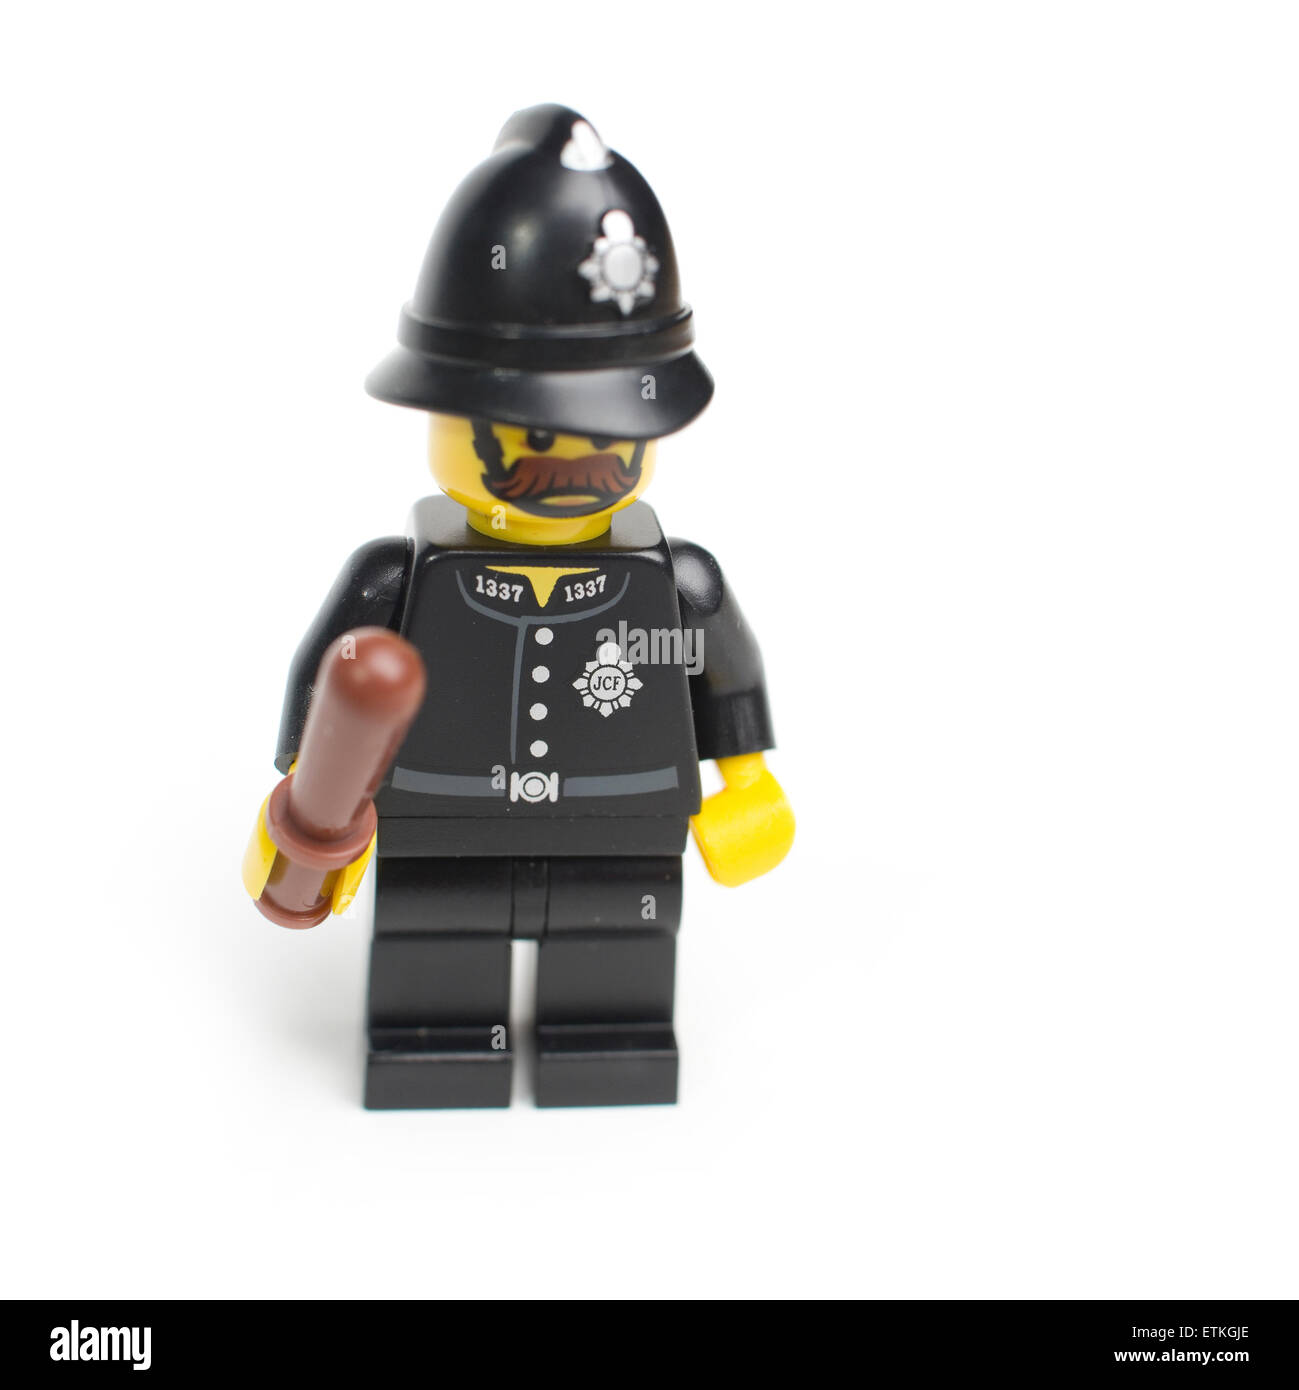 Portrait De Minifigure De Policier De Lego Avec L'arme à Feu Sur Le Fond  Gris De Plaque De Base Photographie éditorial - Image du pistolet, canon:  185928022